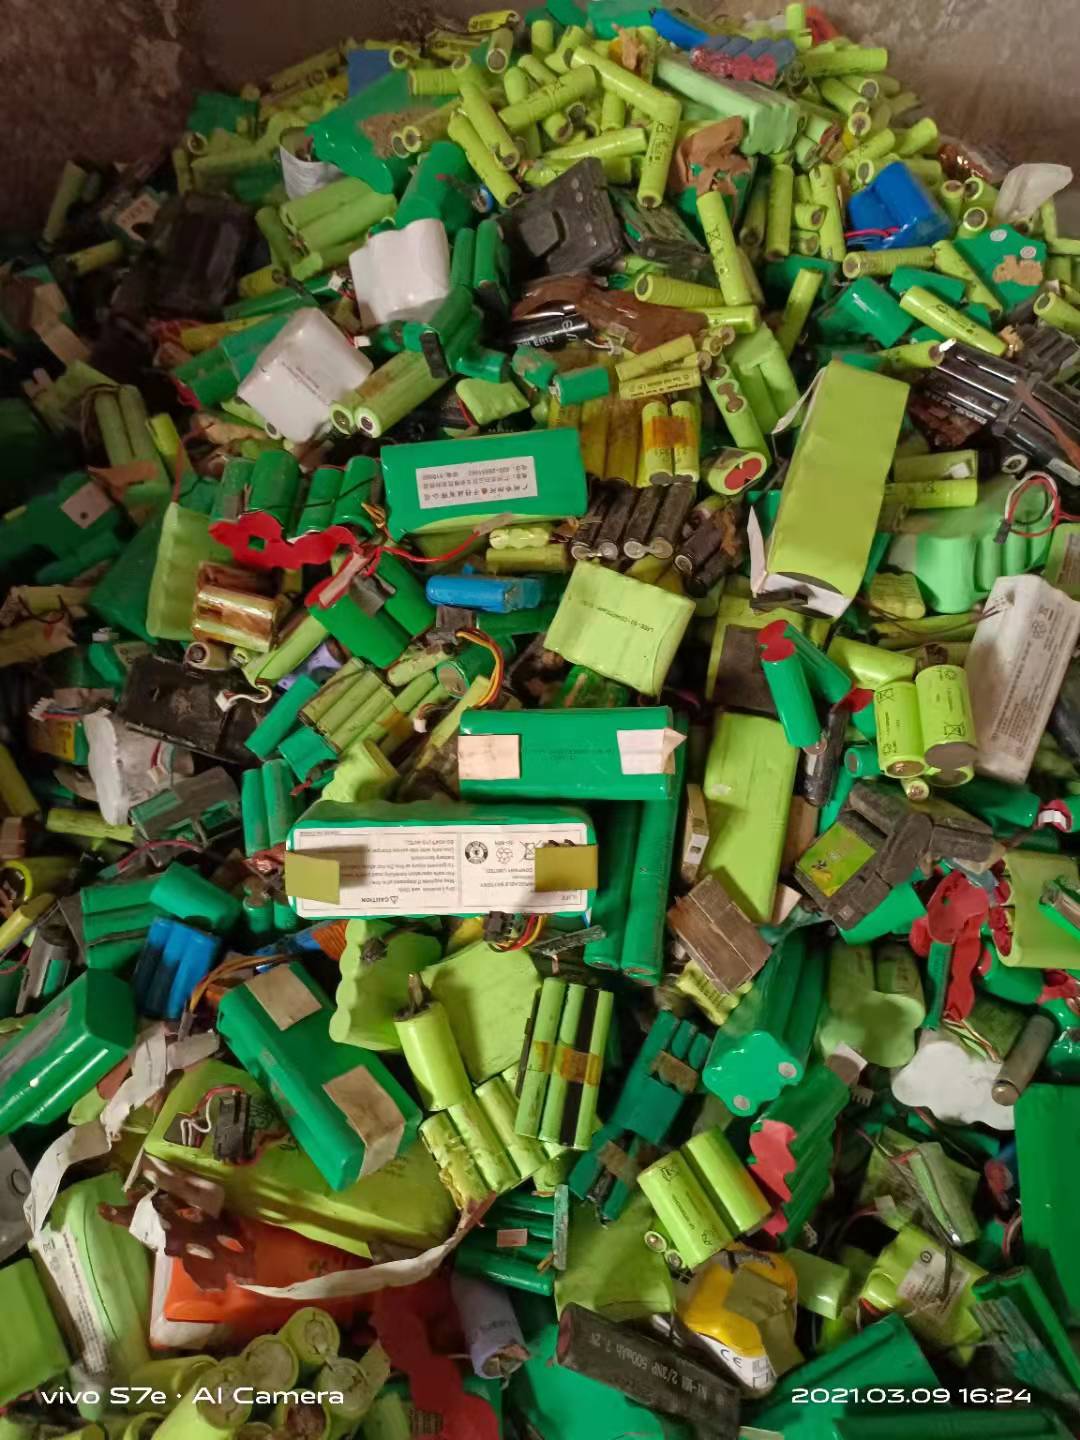 锂聚合物电池回收上门回收热线、石家庄锂聚合物电池回收价格多少钱【益顺废旧物资回收】图片